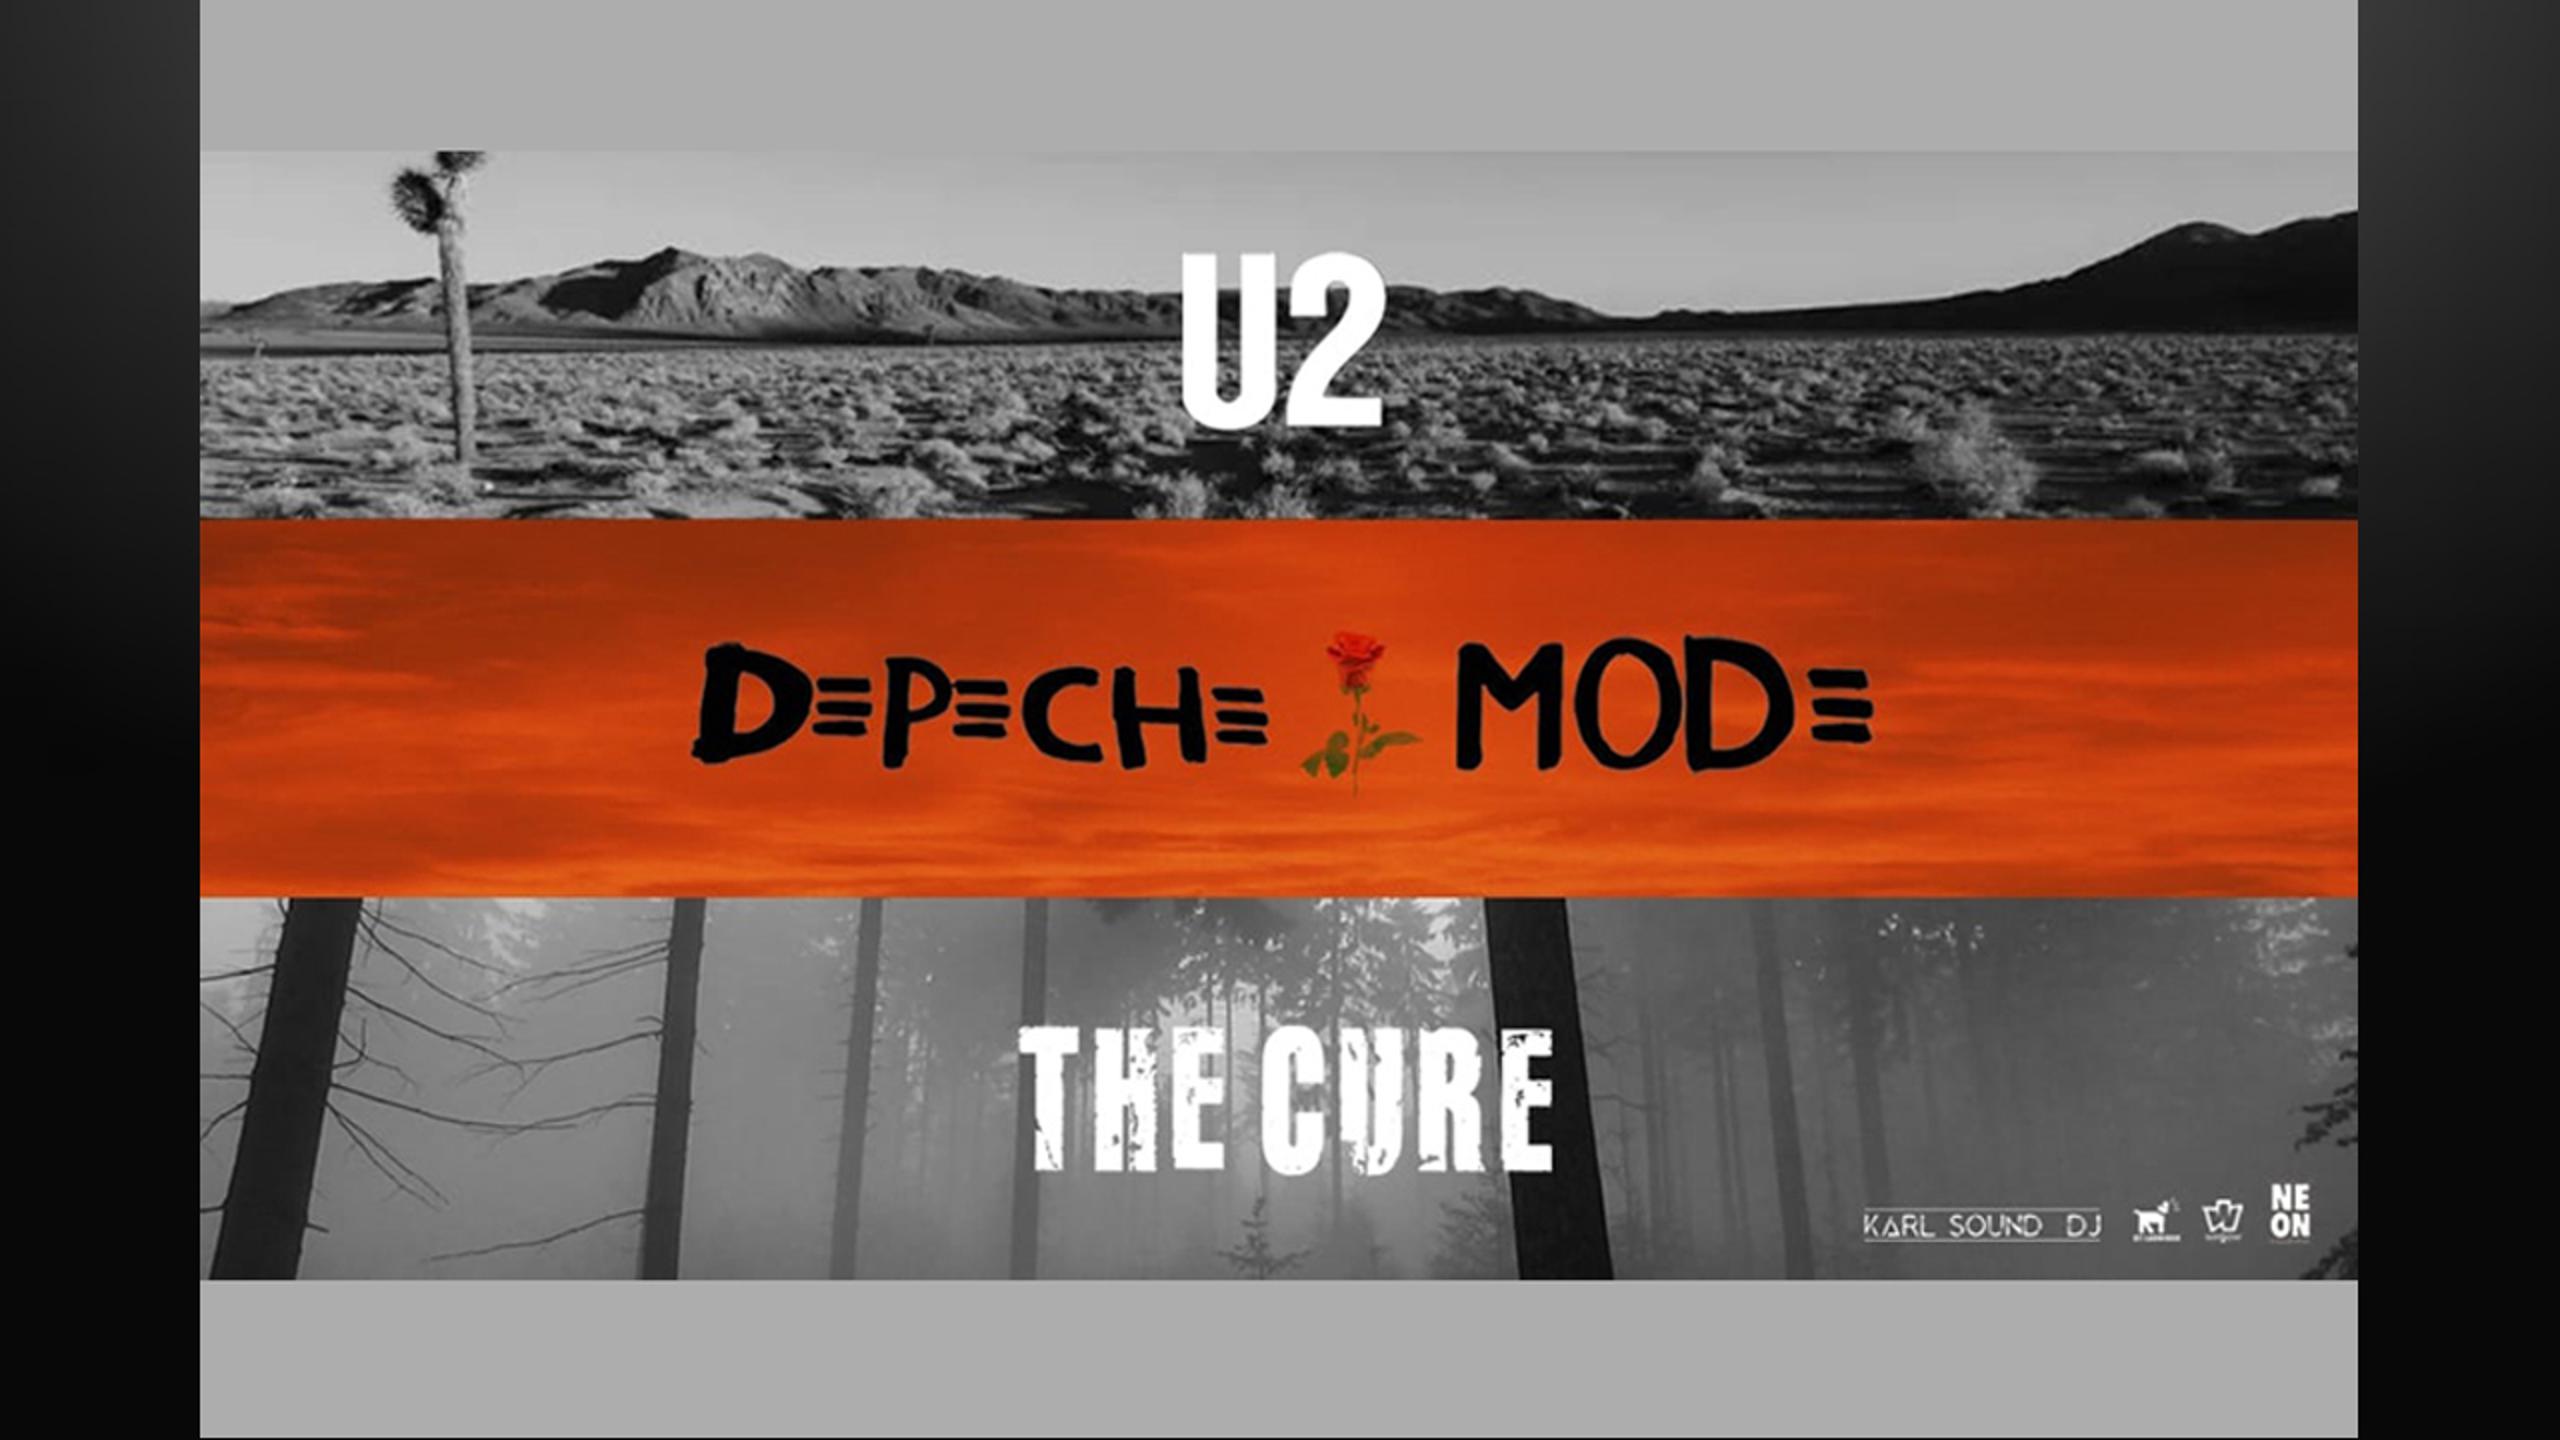 Fotografía promocional de Concierto The Cure, U2 & Depeche Mode by Neon Collective en A Coruña